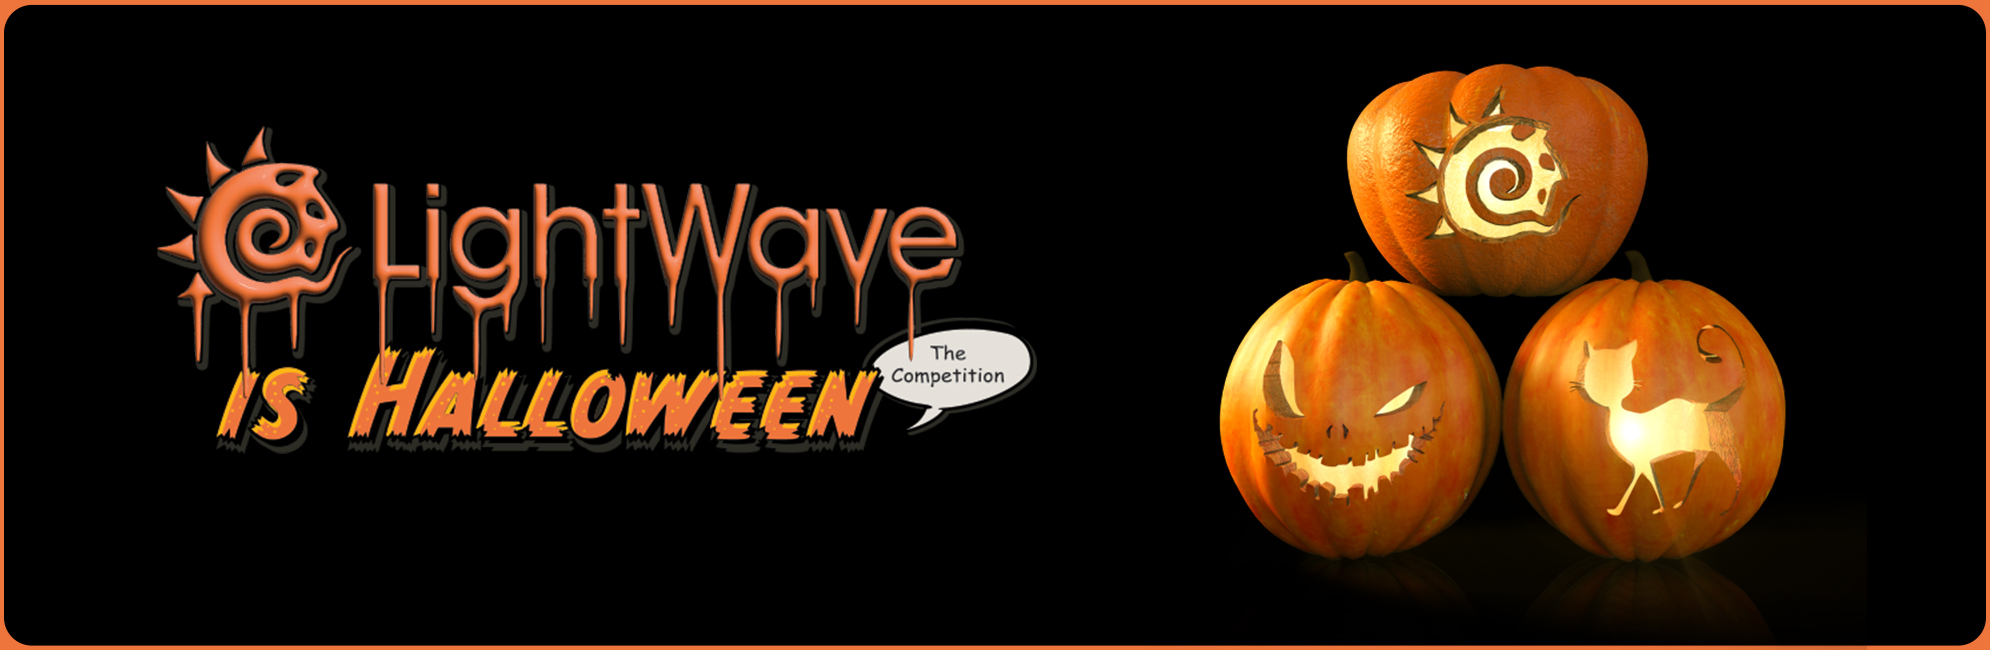 Nome: LightWave is Halloween  LightWave 3D Promo 20320918.jpg
Visite: 93
Dimensione: 387.4 KB